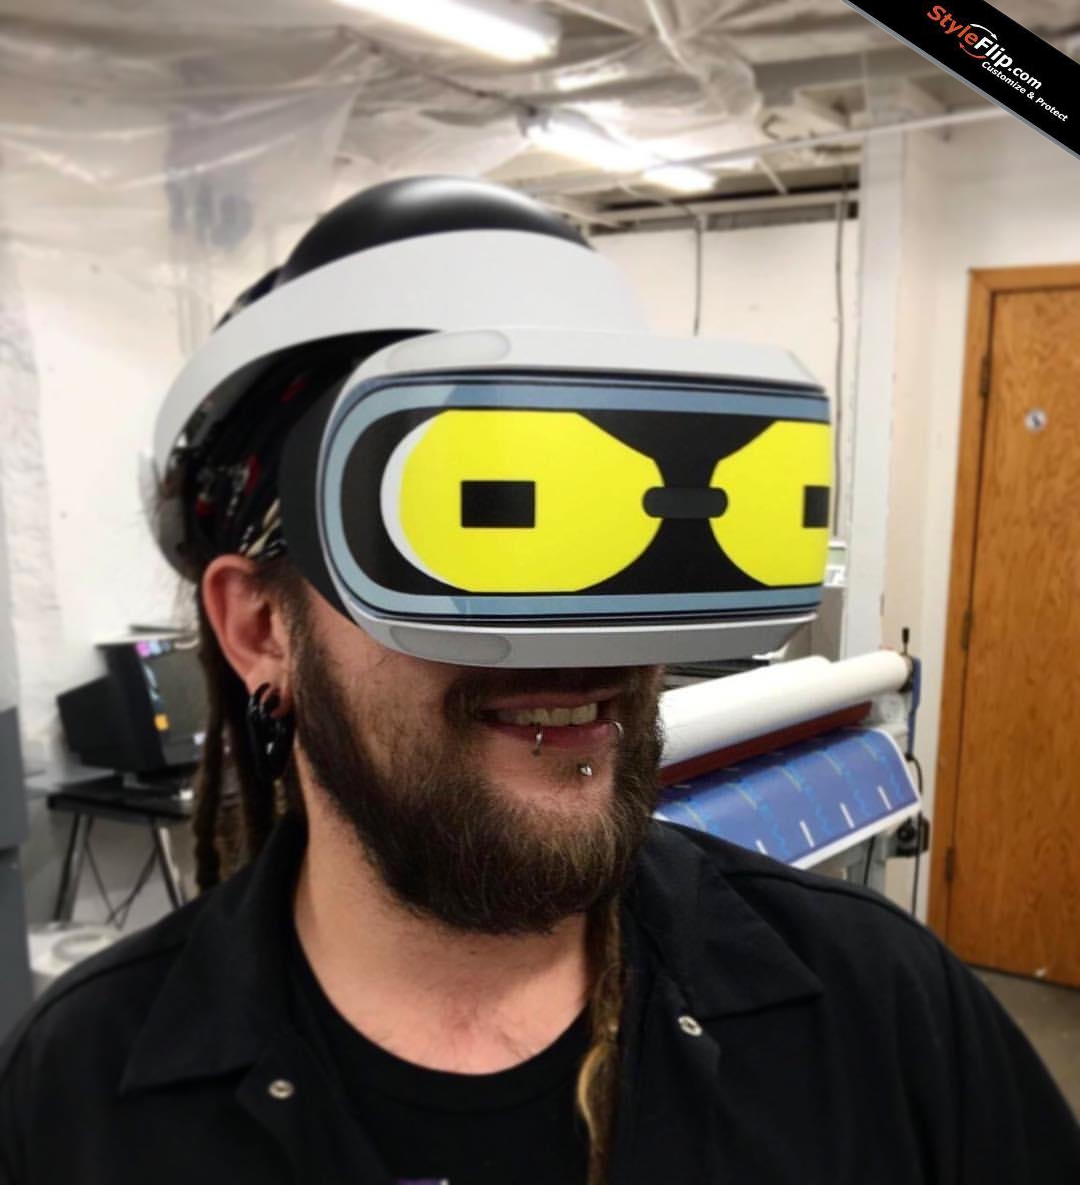 Vinilos/Skins para las Gafas VR 3D de PS4. Personaliza tus gafas VR.